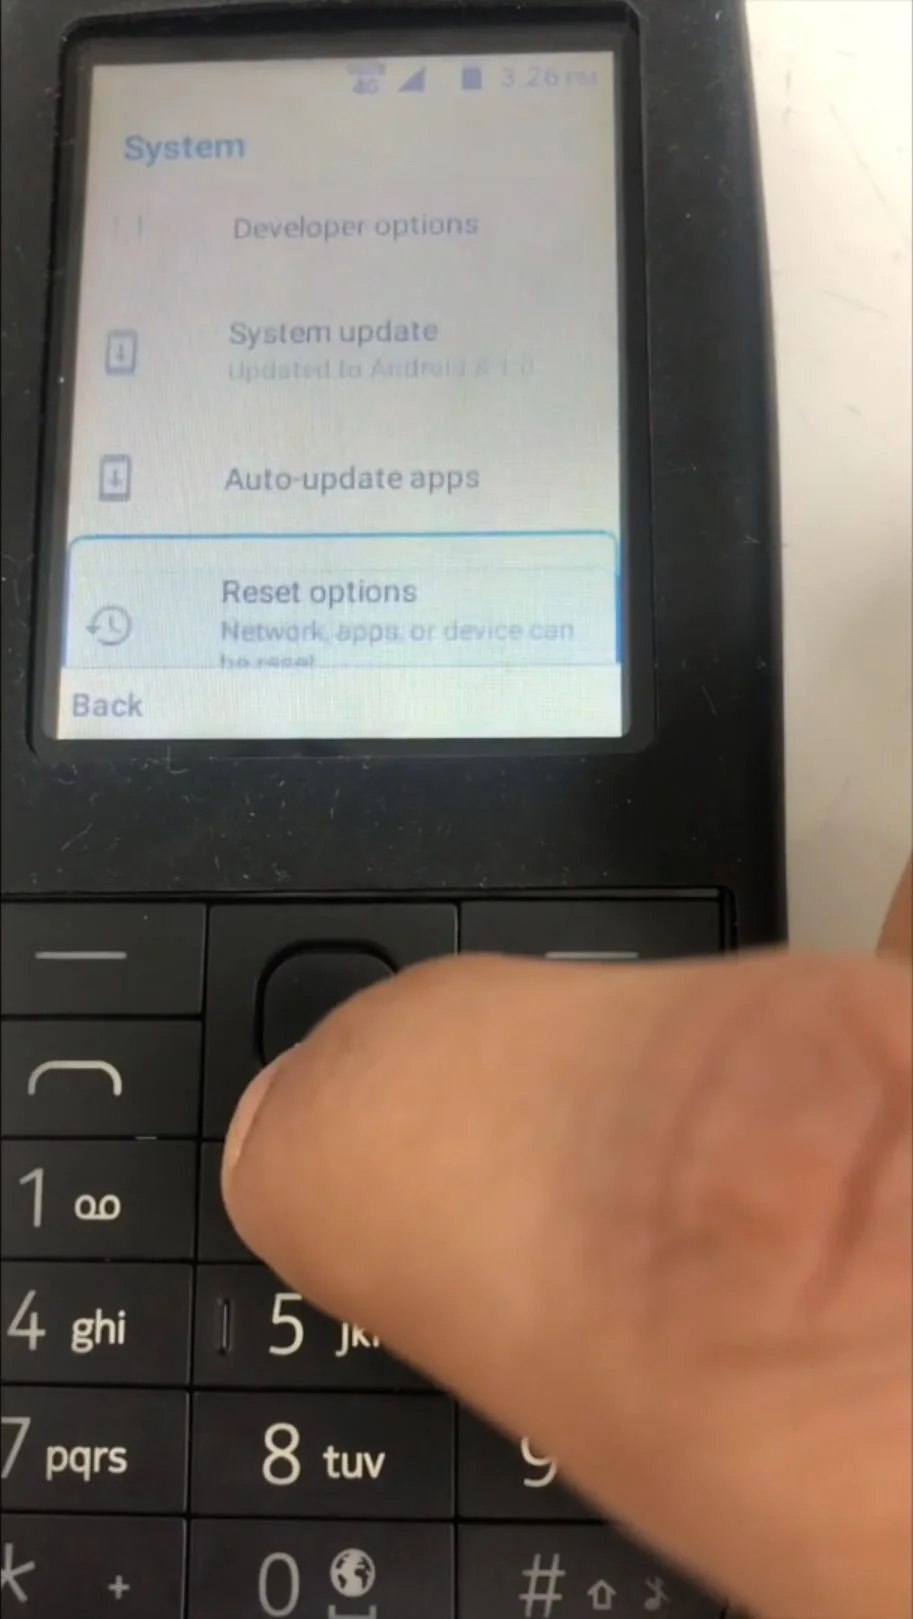 Опубликовано видео, демонстрирующее работу кнопочного телефона с Android - фото 1